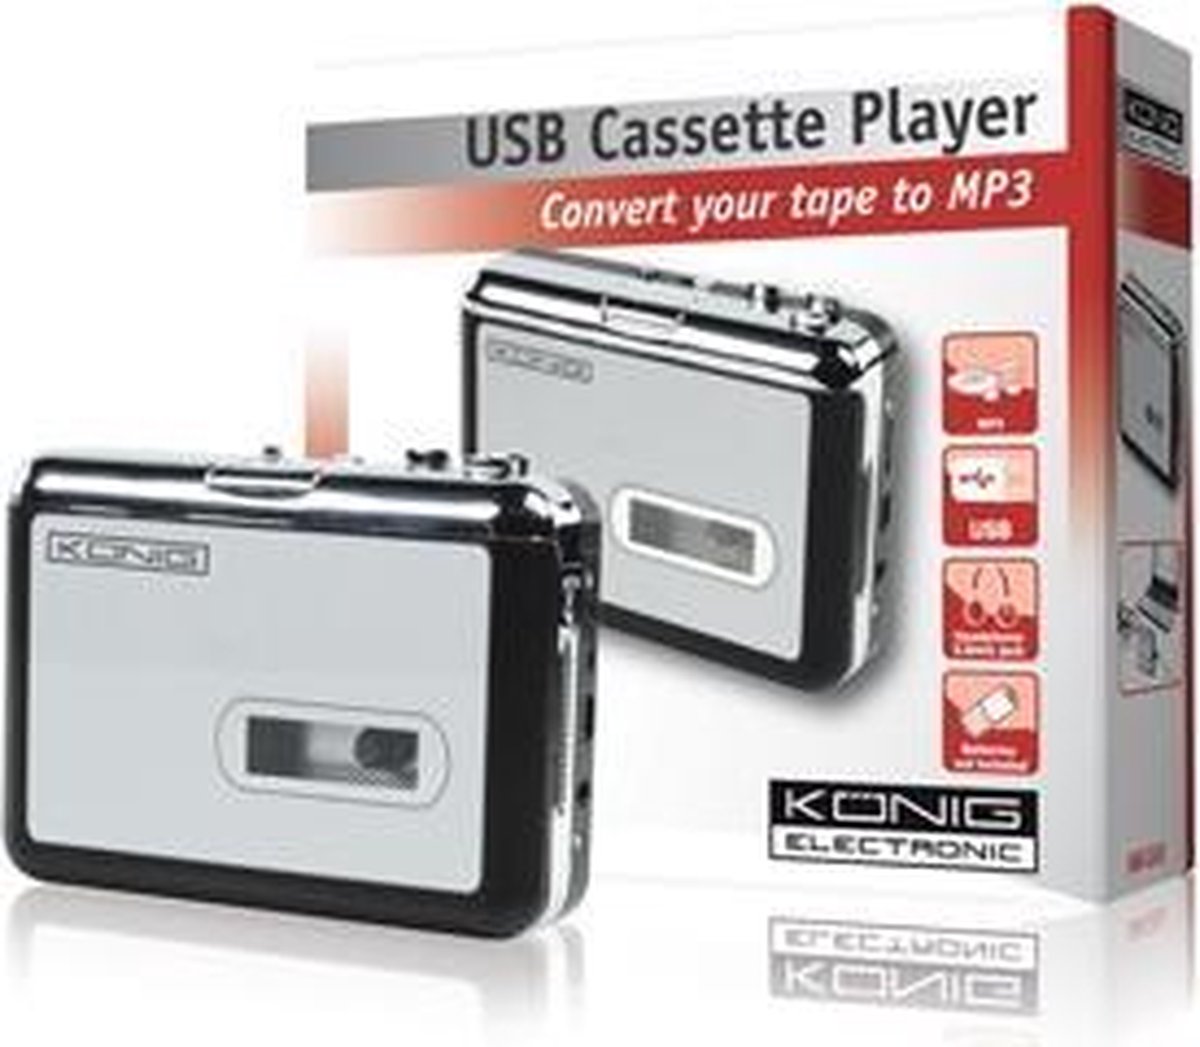 CASSETTE to MP3 CONVERTER - Convertisseur de cassettes en MP3